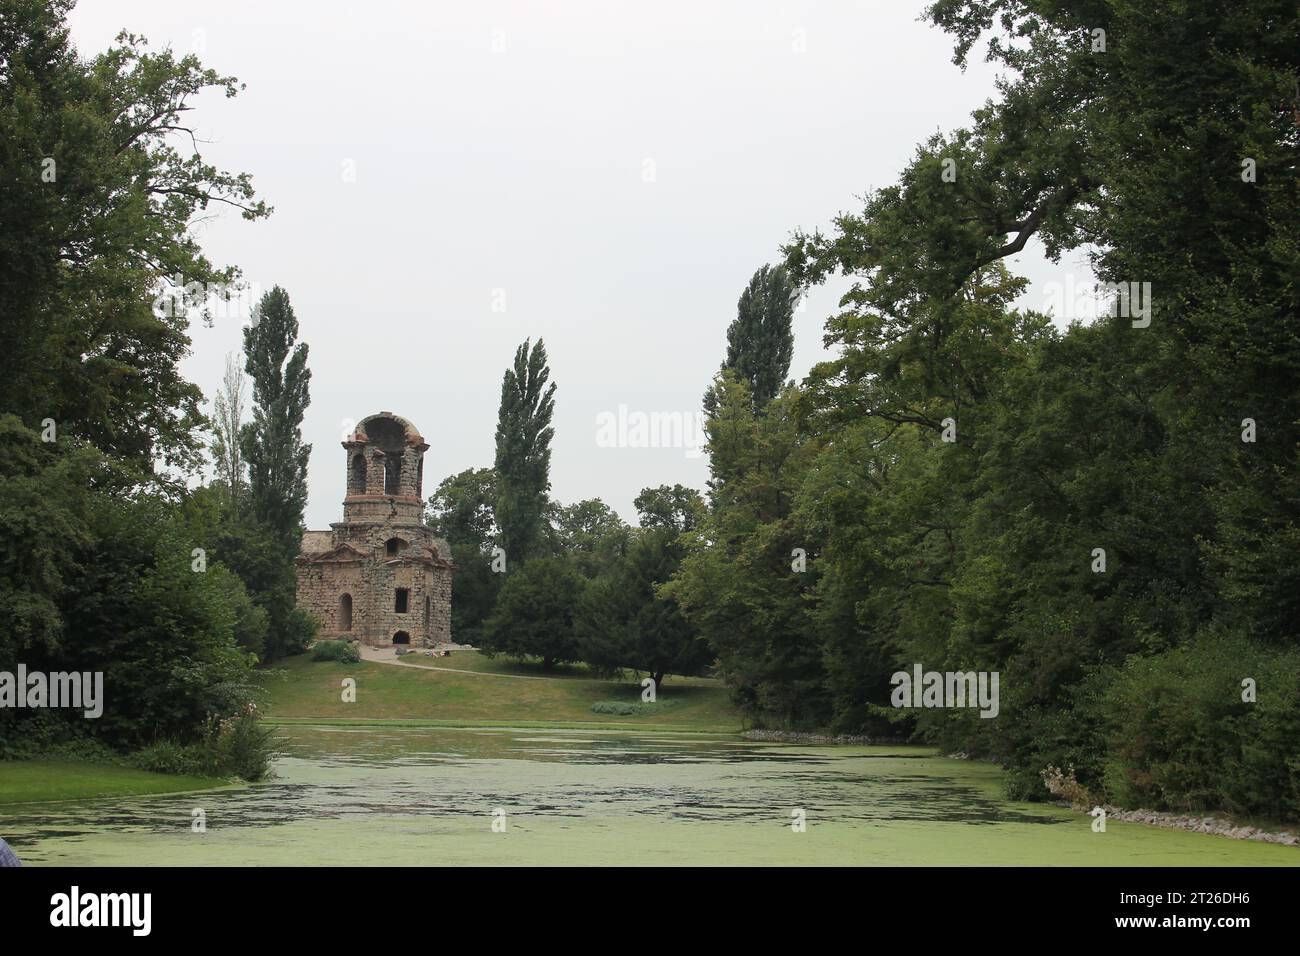 Malerische Ruinen an einem sonnigen Tag im Schlosspark Schwetzingen, Deutschland Stockfoto